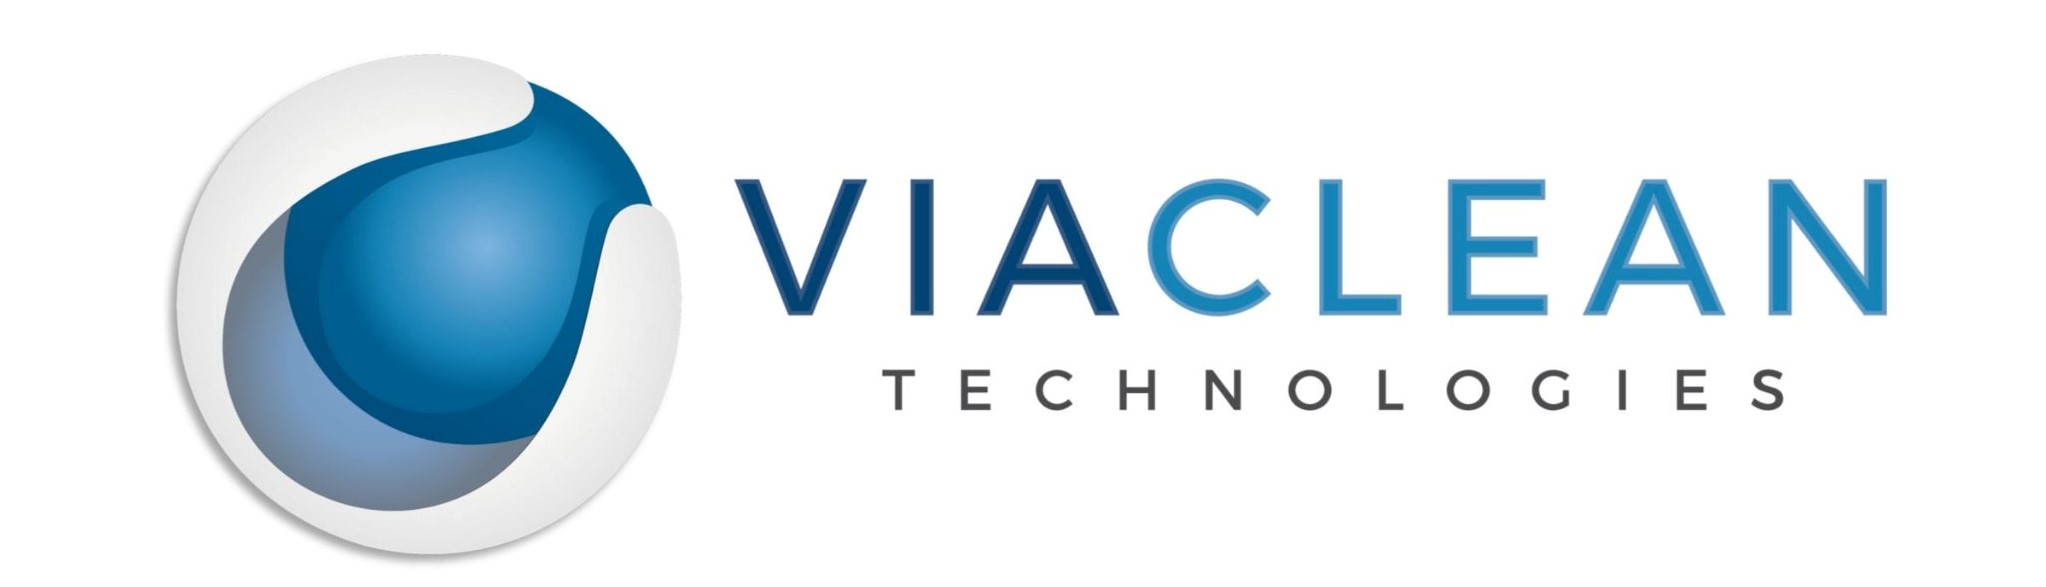 Viaclean Technologies Logo